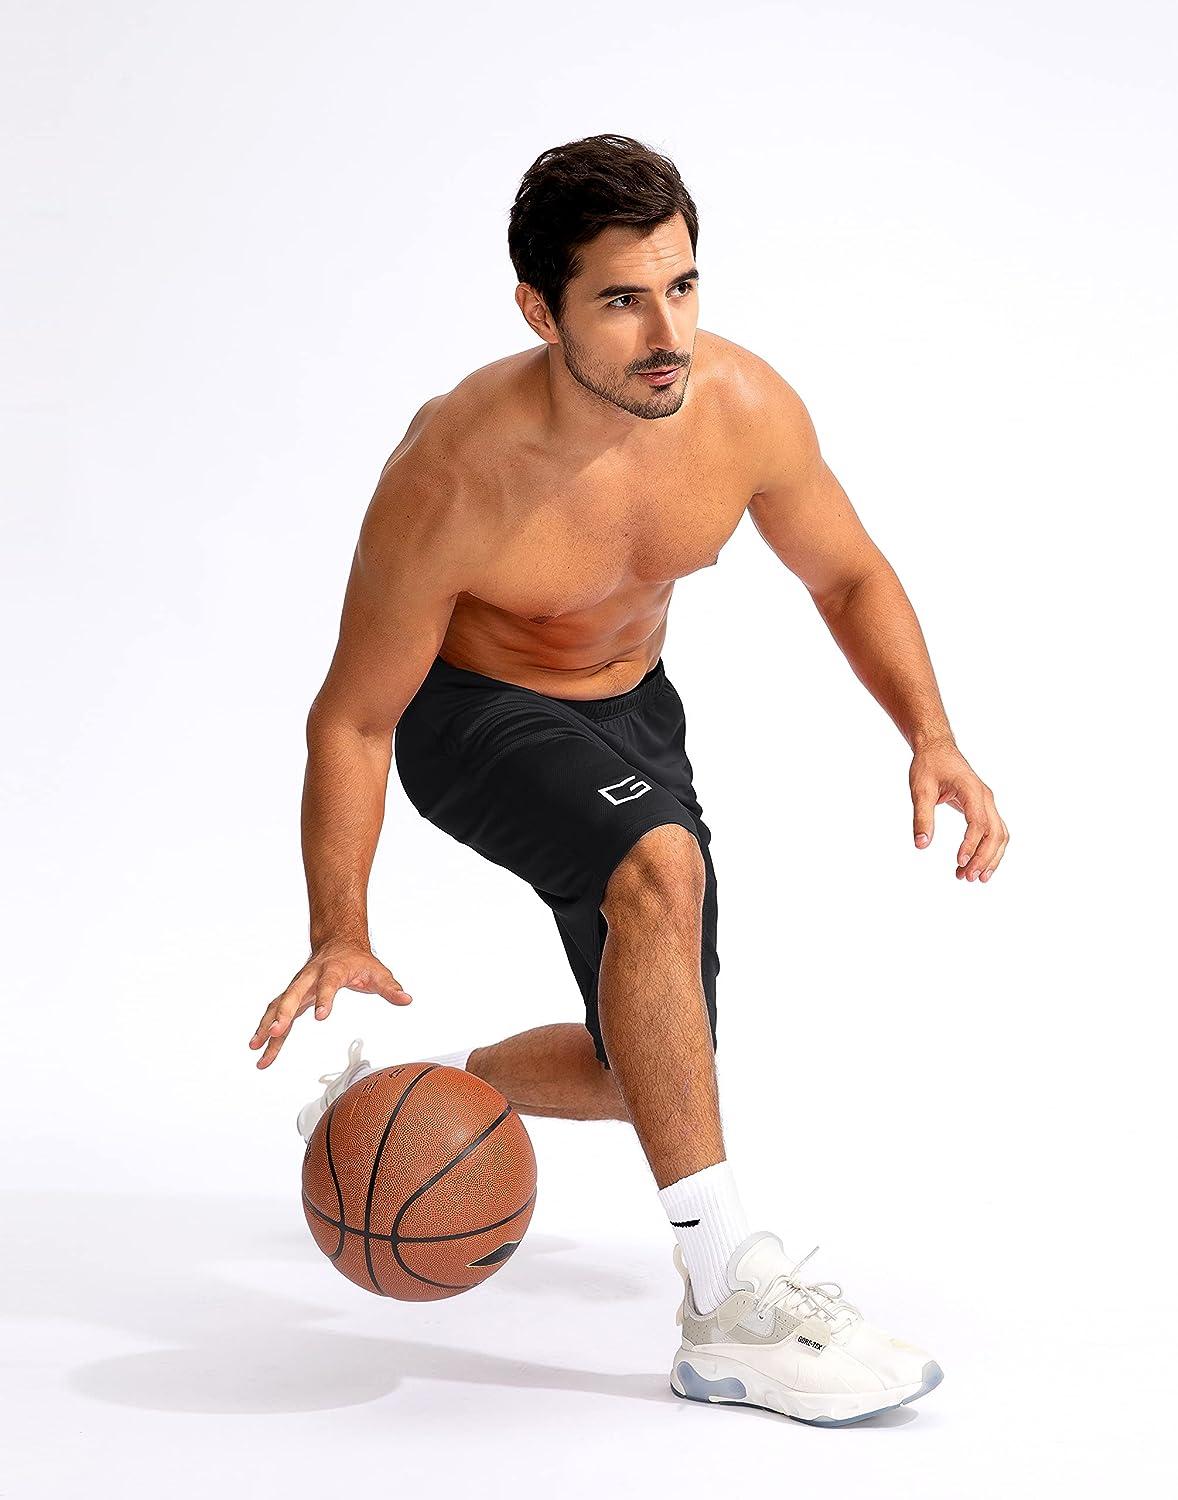 G Gradual Men's Basketball Shorts with Zipper Pockets Lightweight